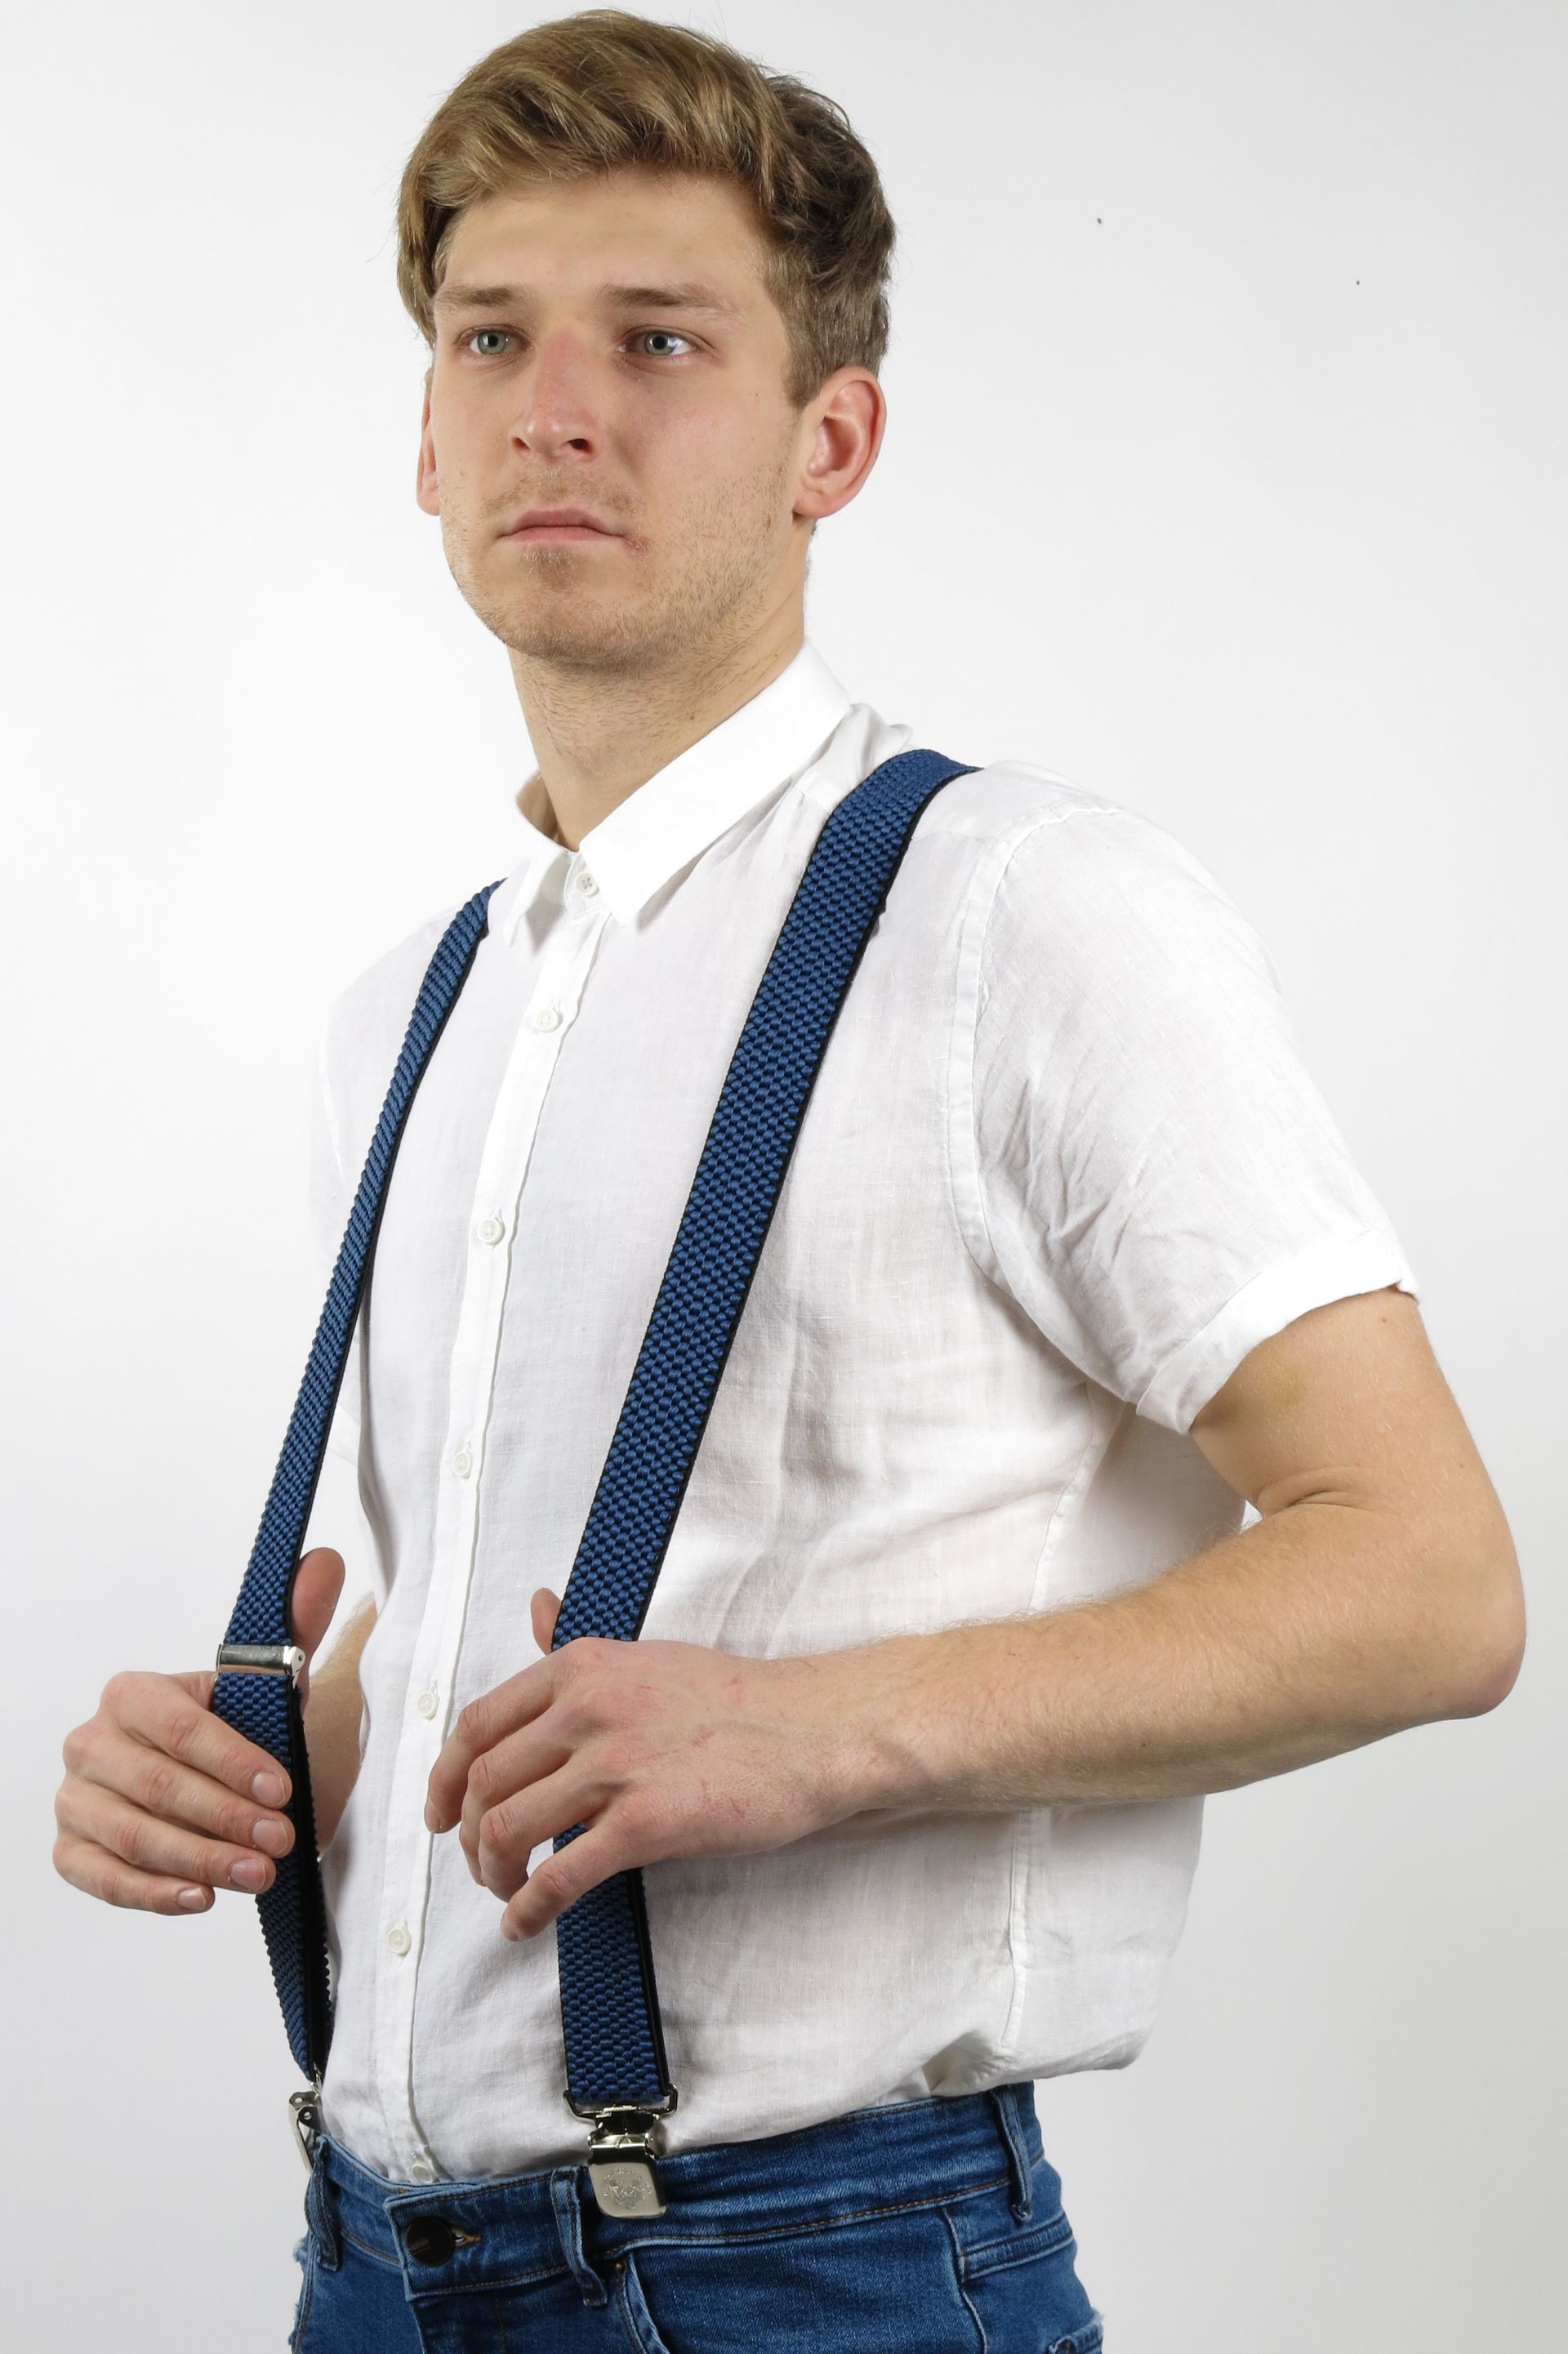 Suspenders X JEANS DYK40-BLUE